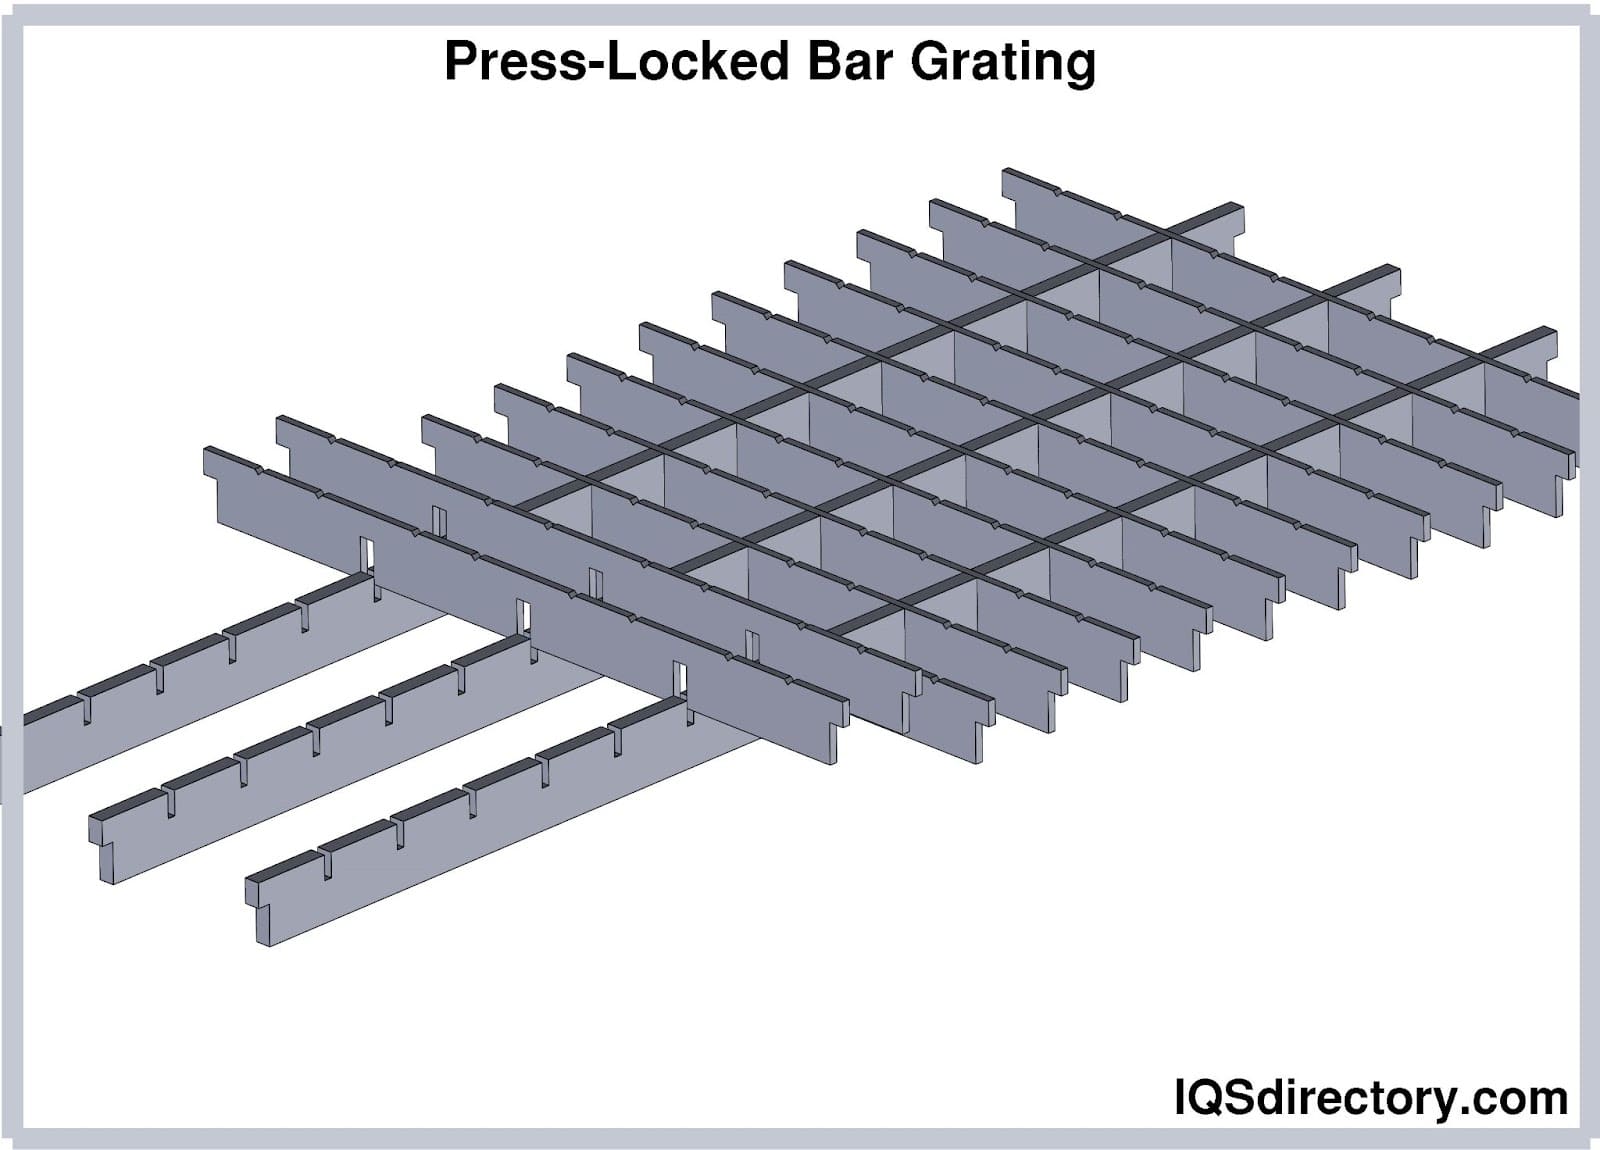 Press-Locked Bar Grating